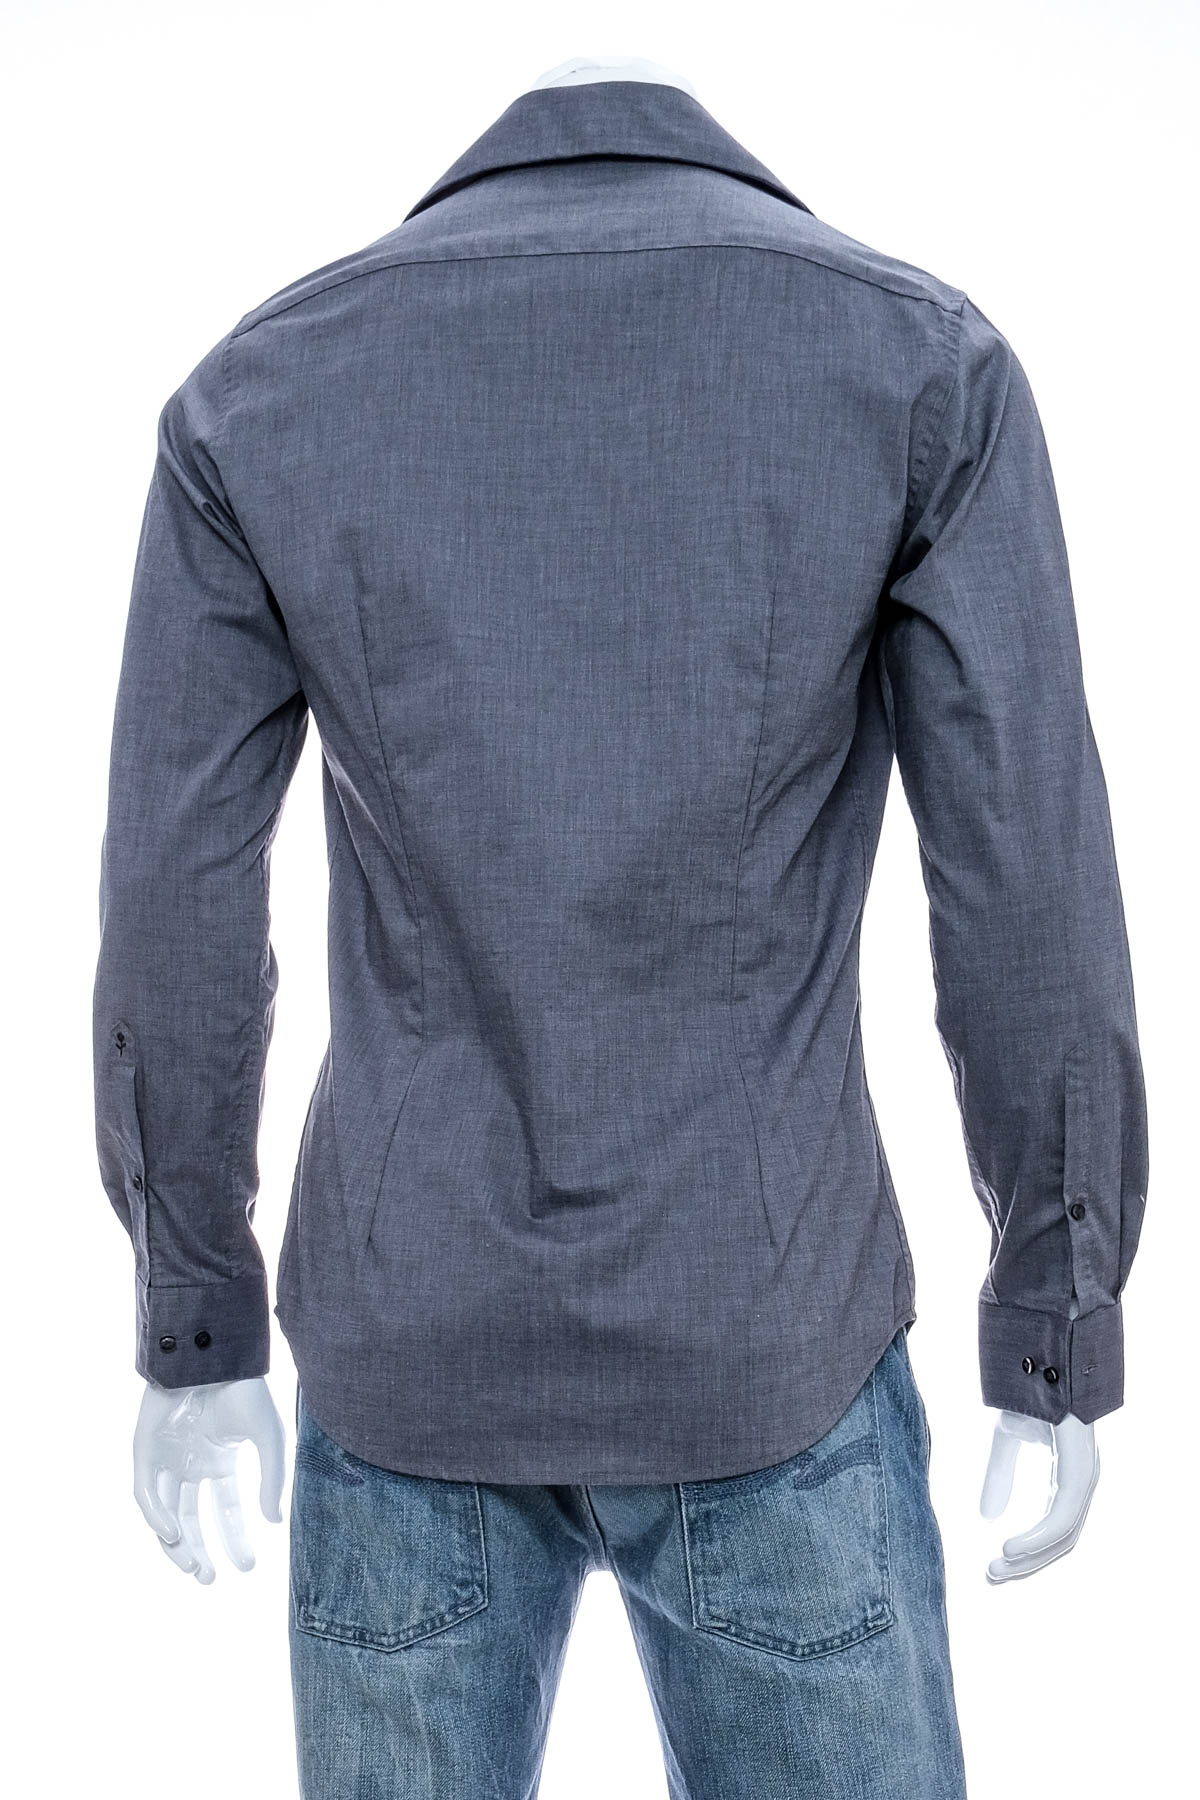 Men's shirt - Seidensticker - 1